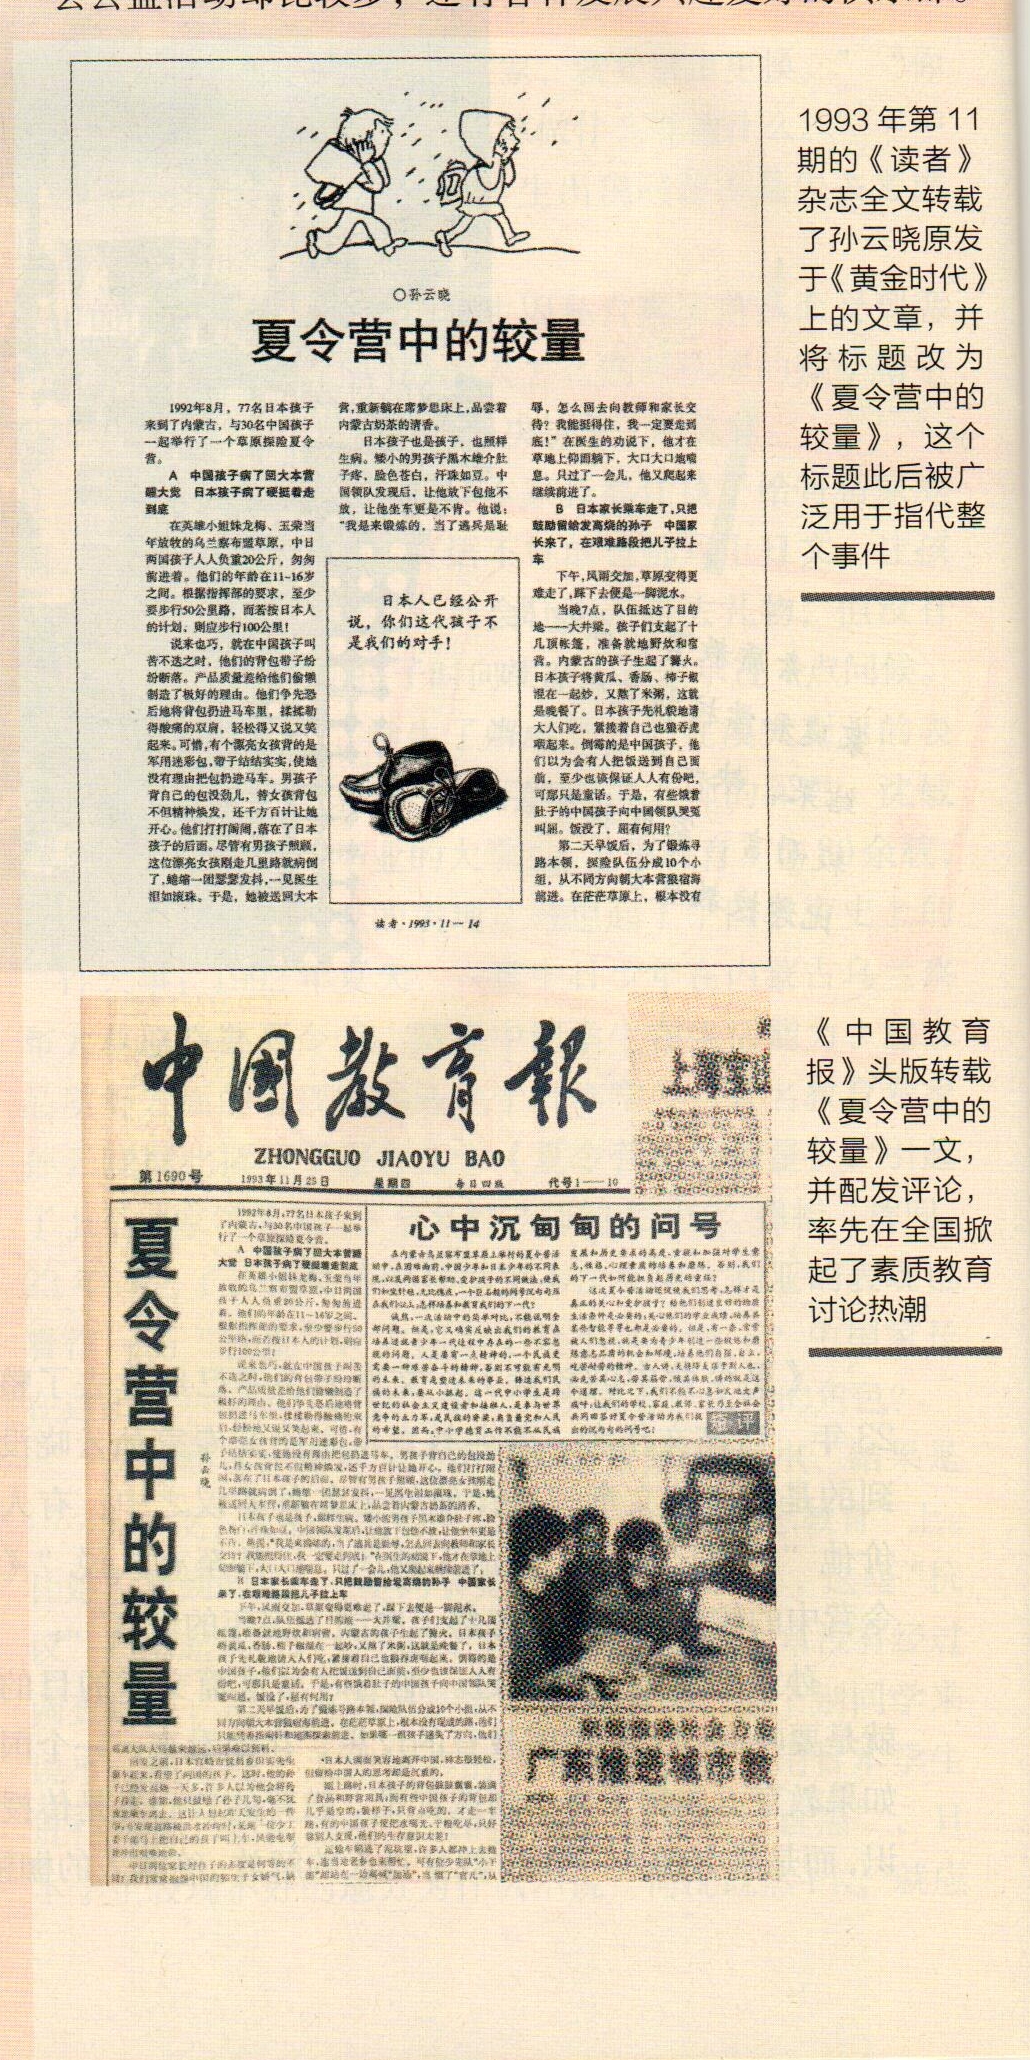 《中國教育報》和《讀者》雜誌的報導